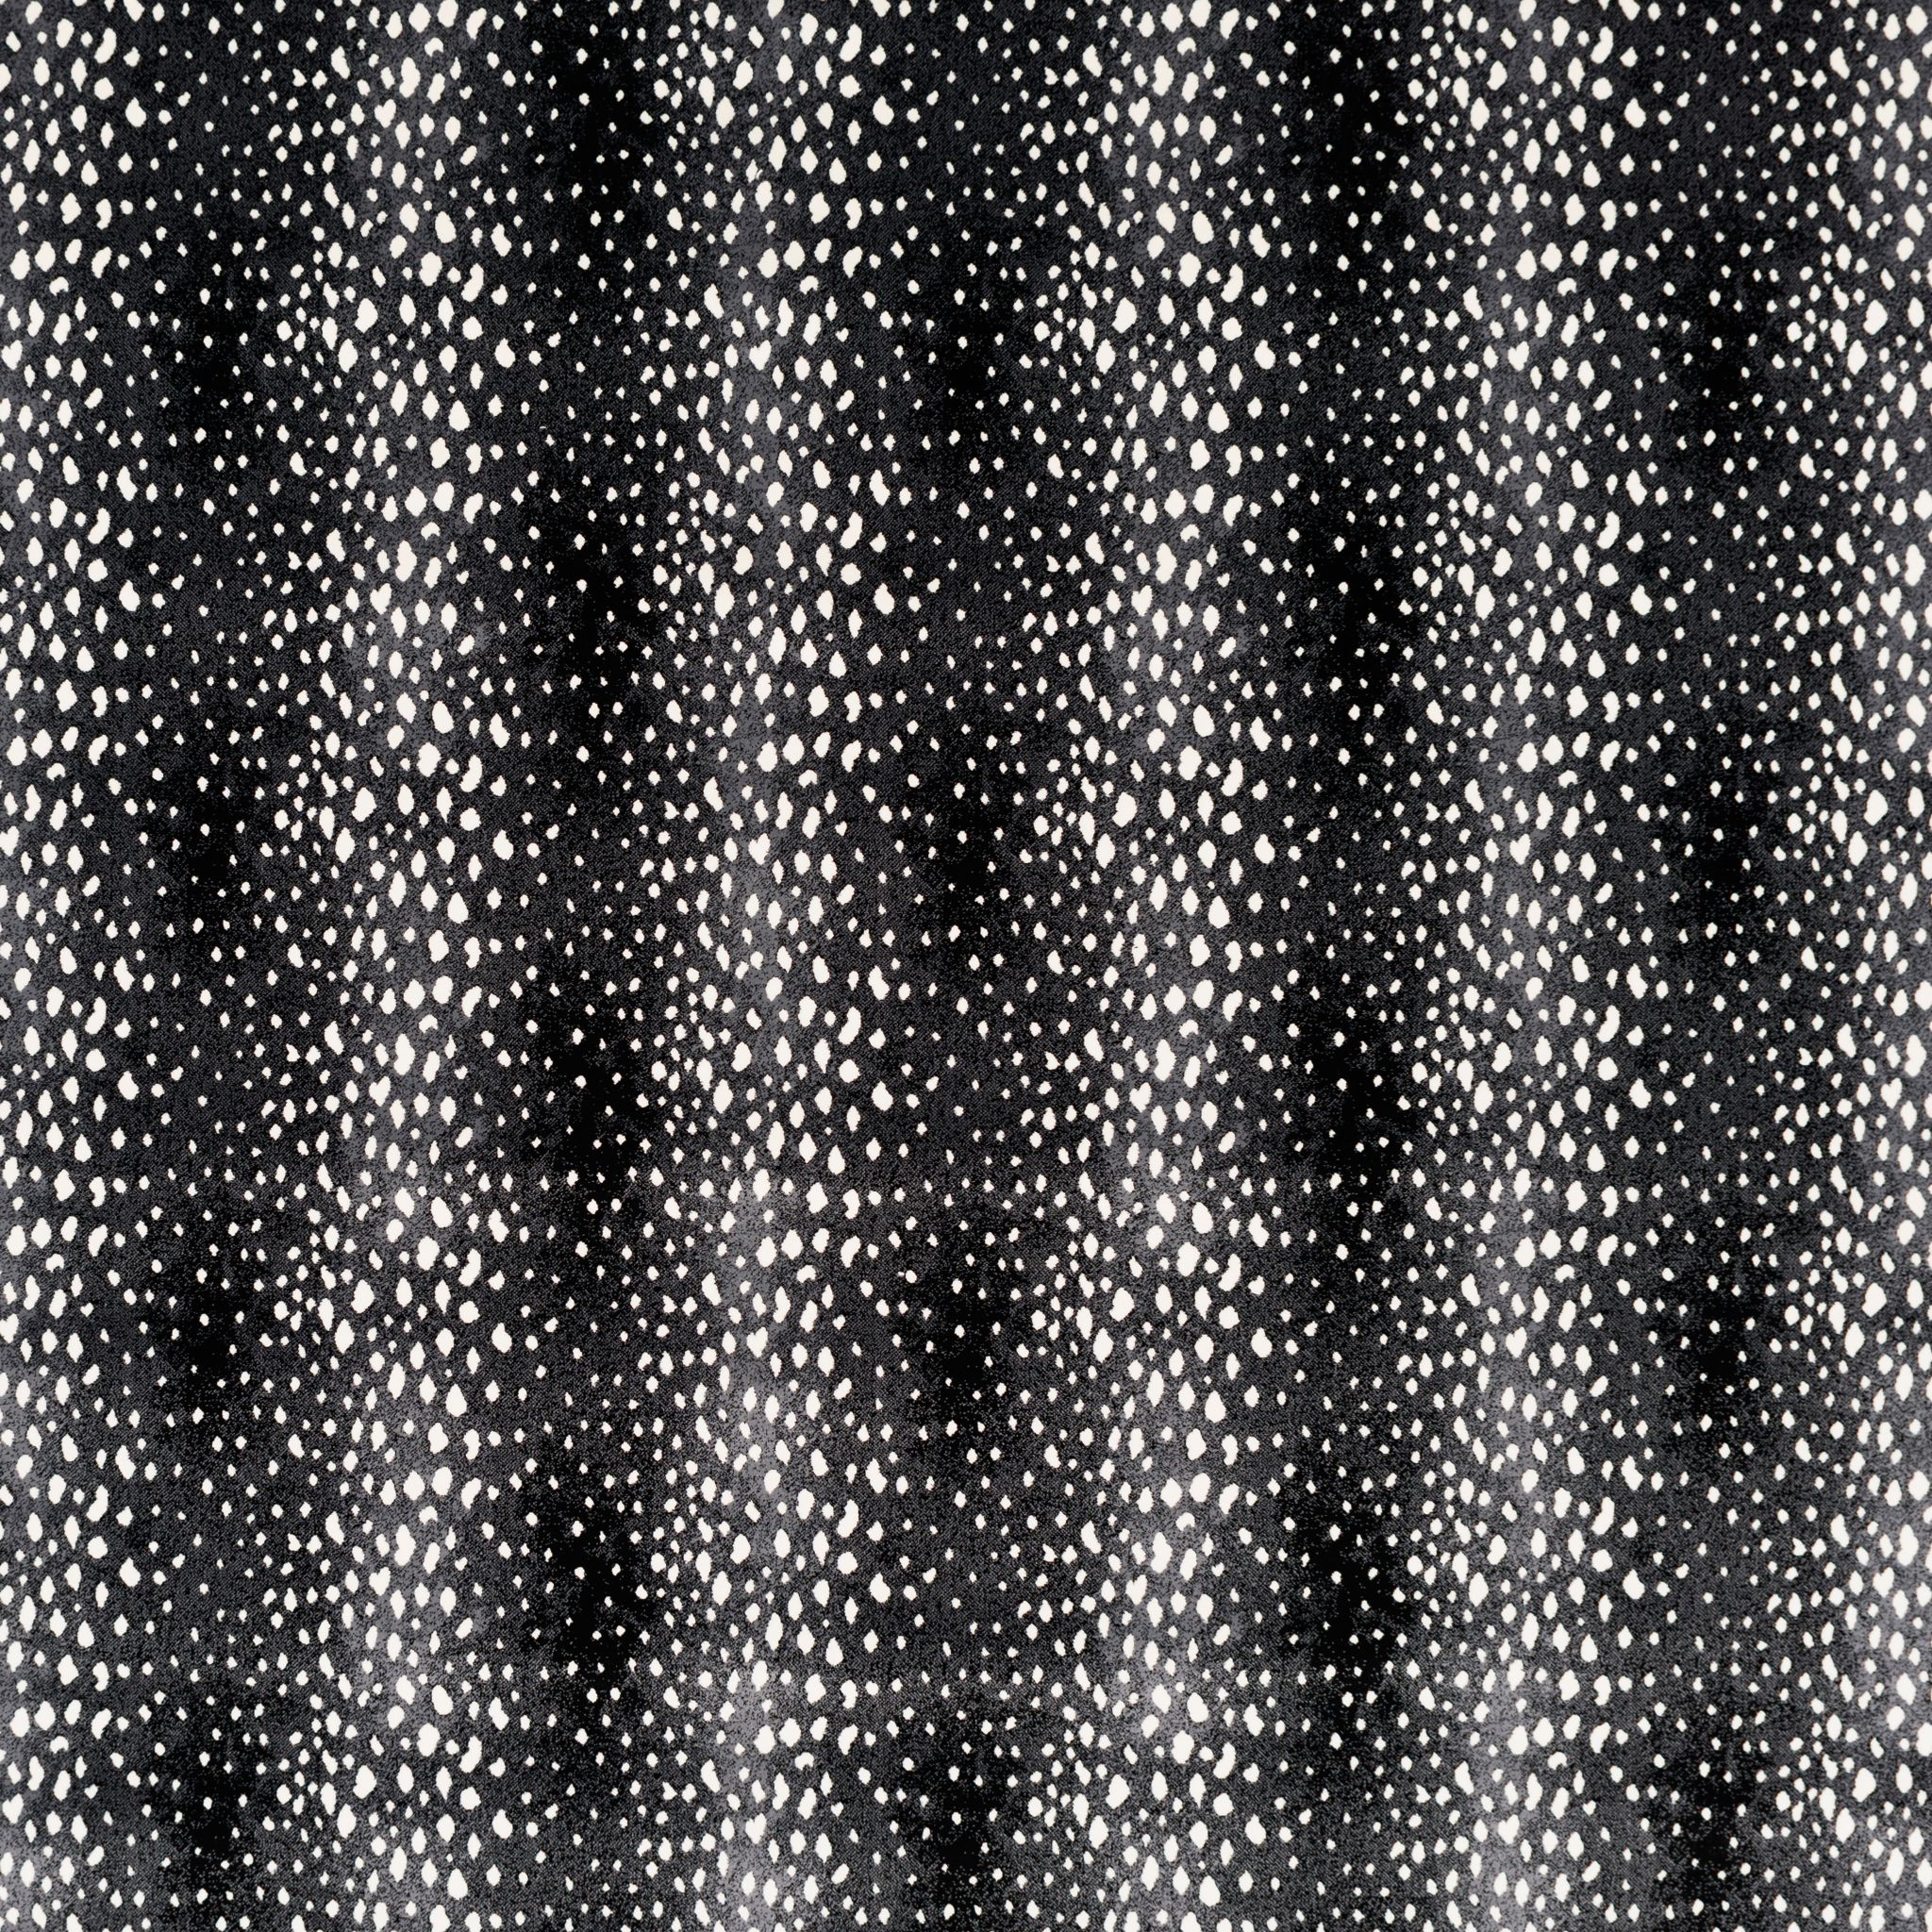 Antilocarpa Face-To-Face Wilton Carpet, Onyx Default Title